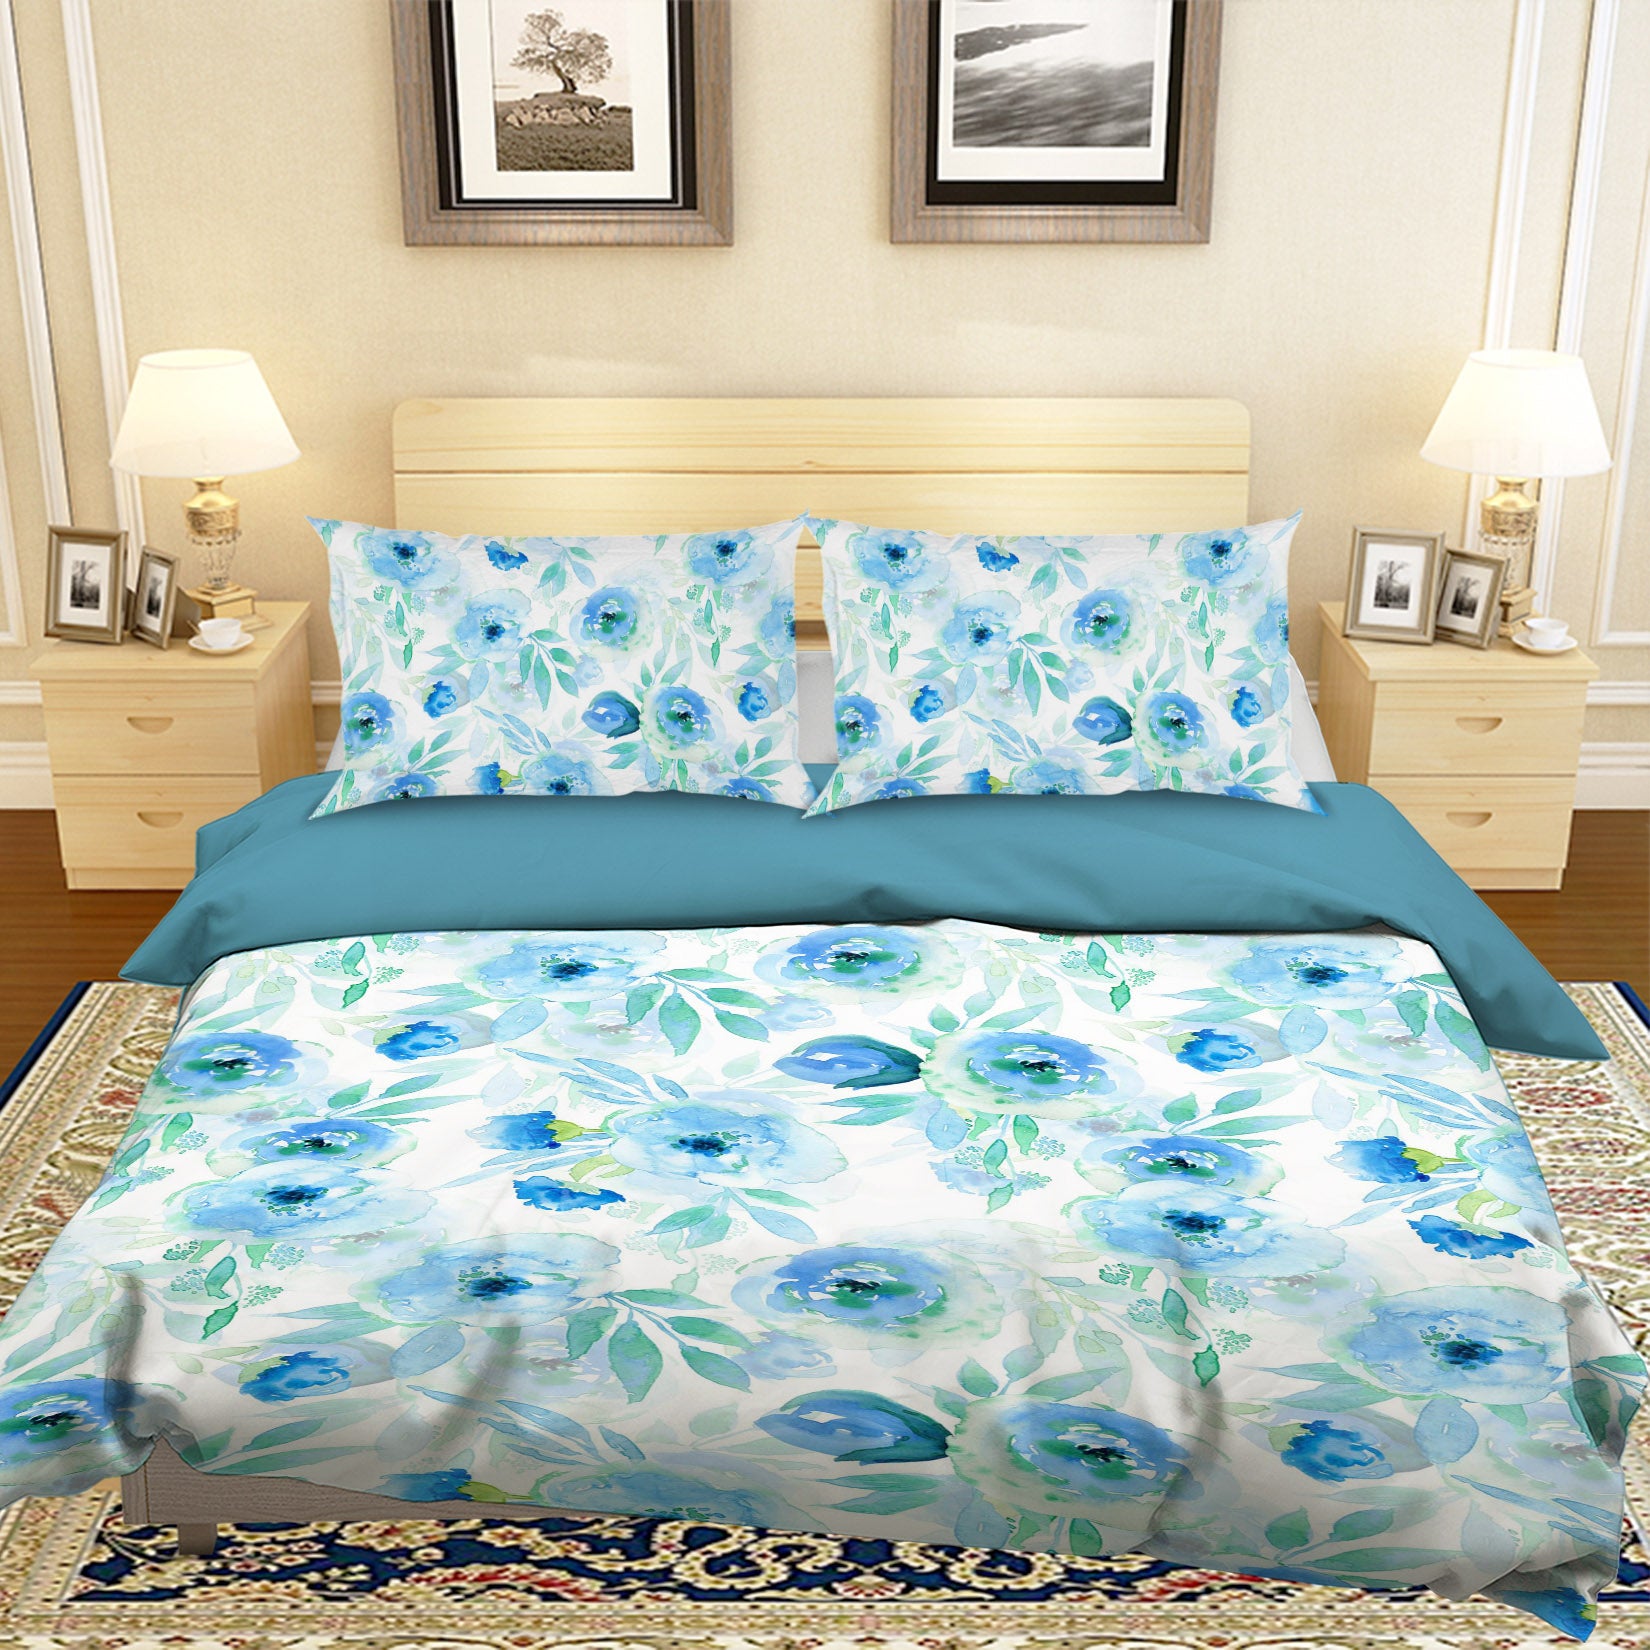 3D Blue Flowers 18187 Uta Naumann Bedding Bed Pillowcases Quilt